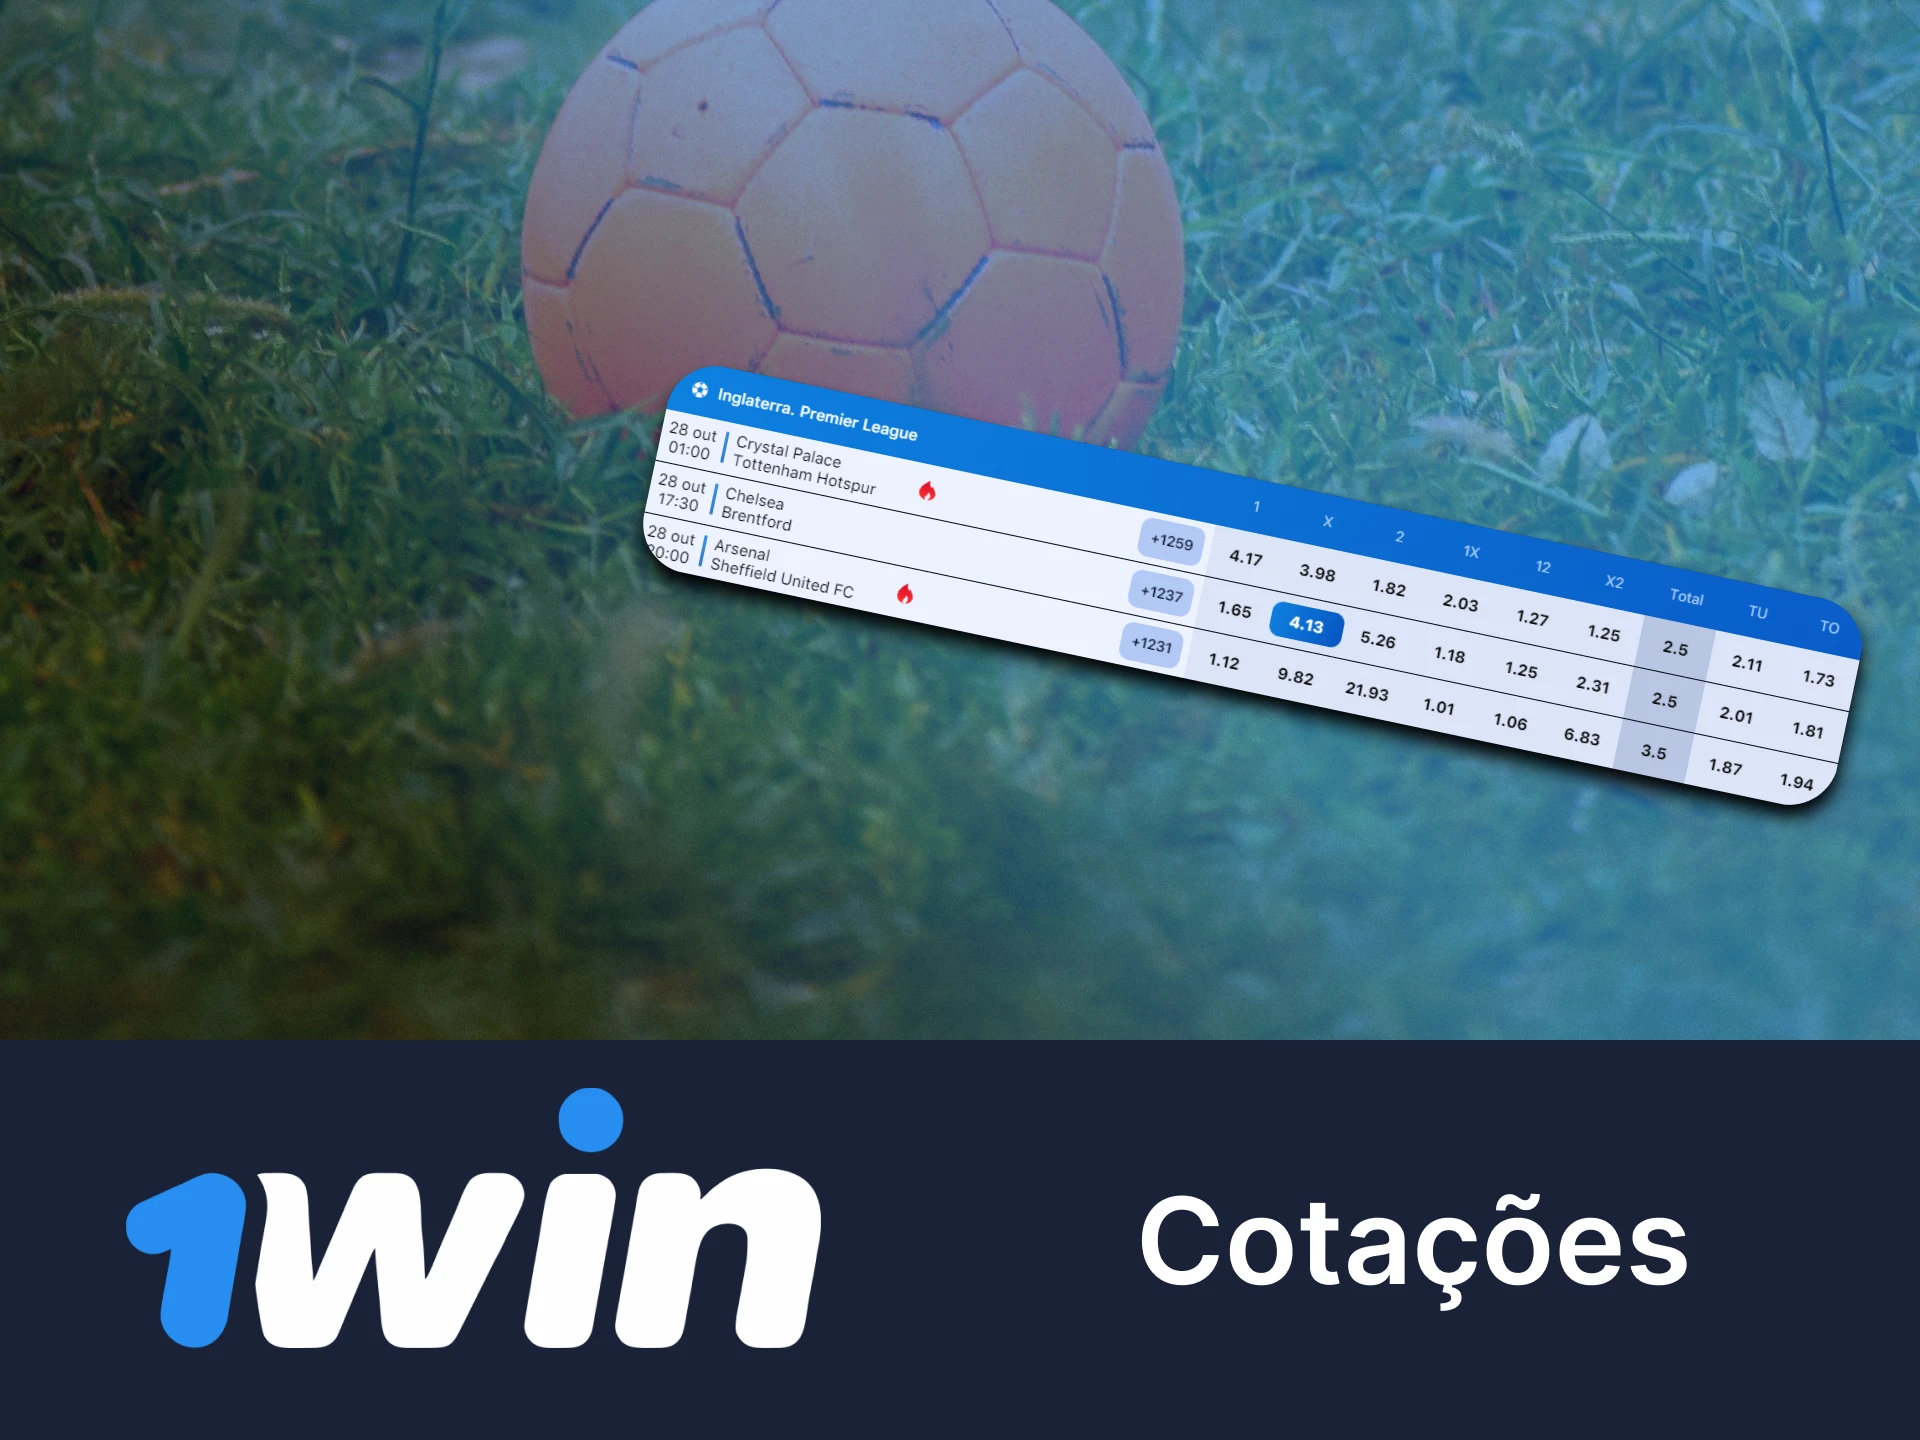 Descubra mais sobre os recursos de apostas esportivas com 1win.